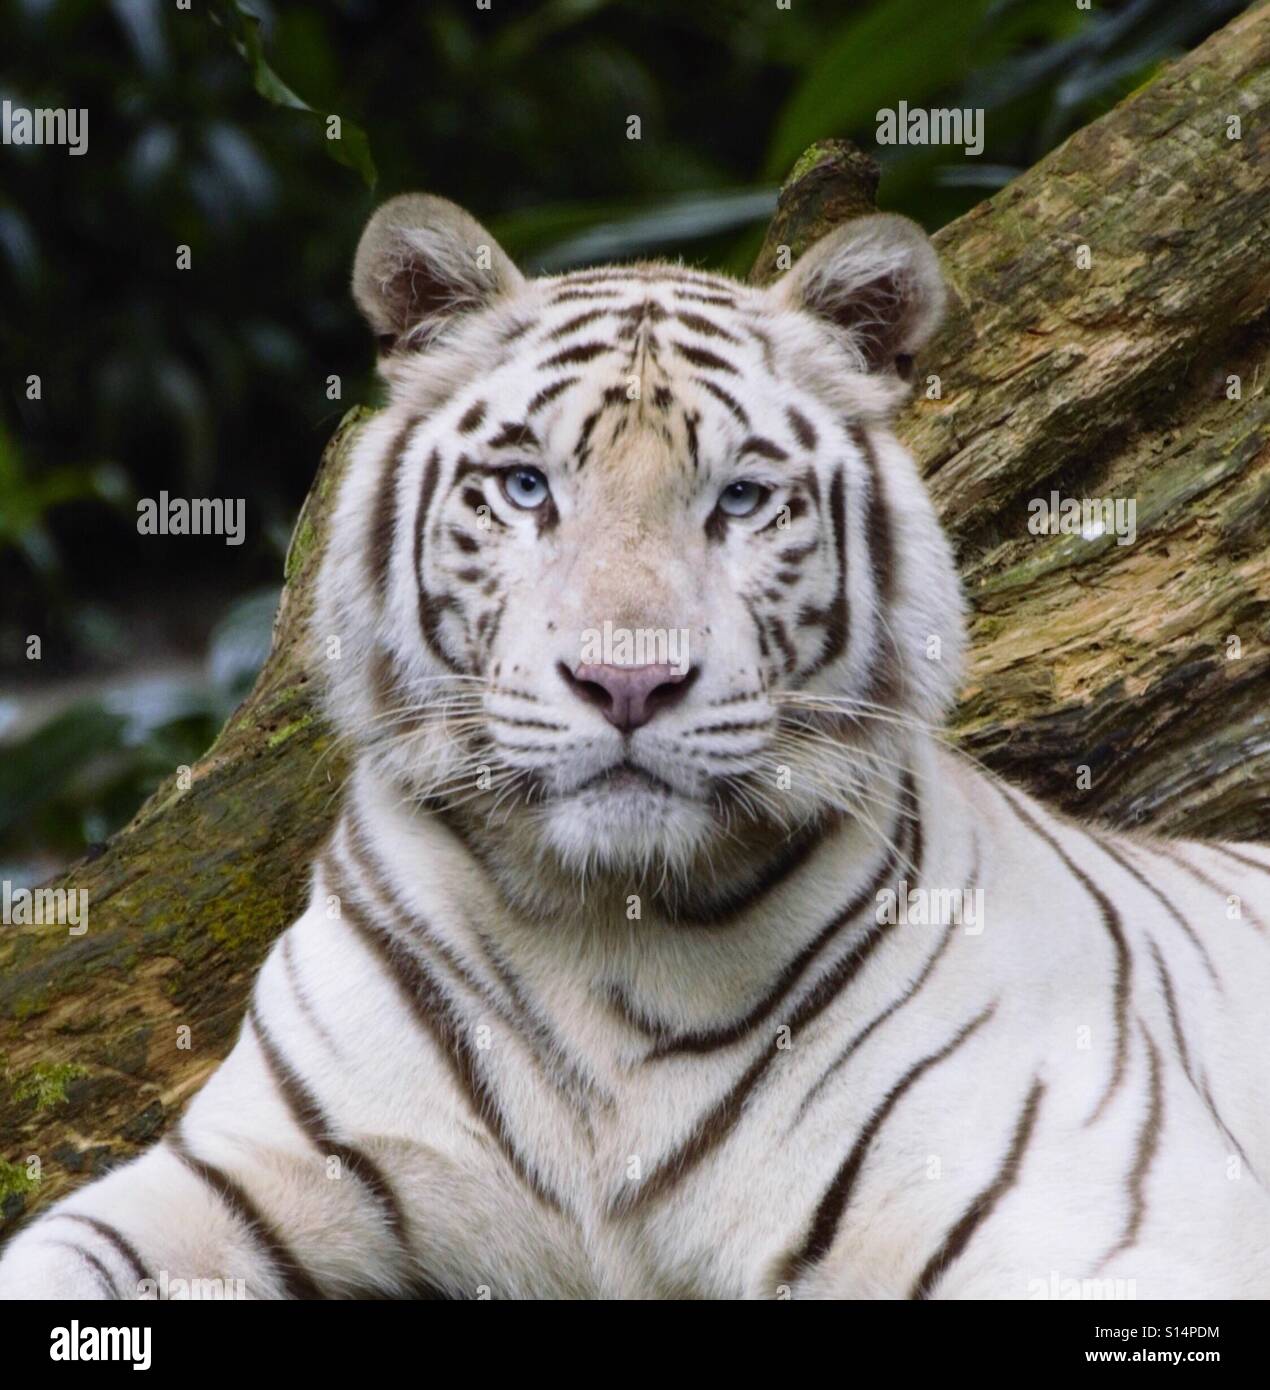 Mirar a los ojos. Coger el azul intenso de los ojos de un tigre blanco. Foto de stock